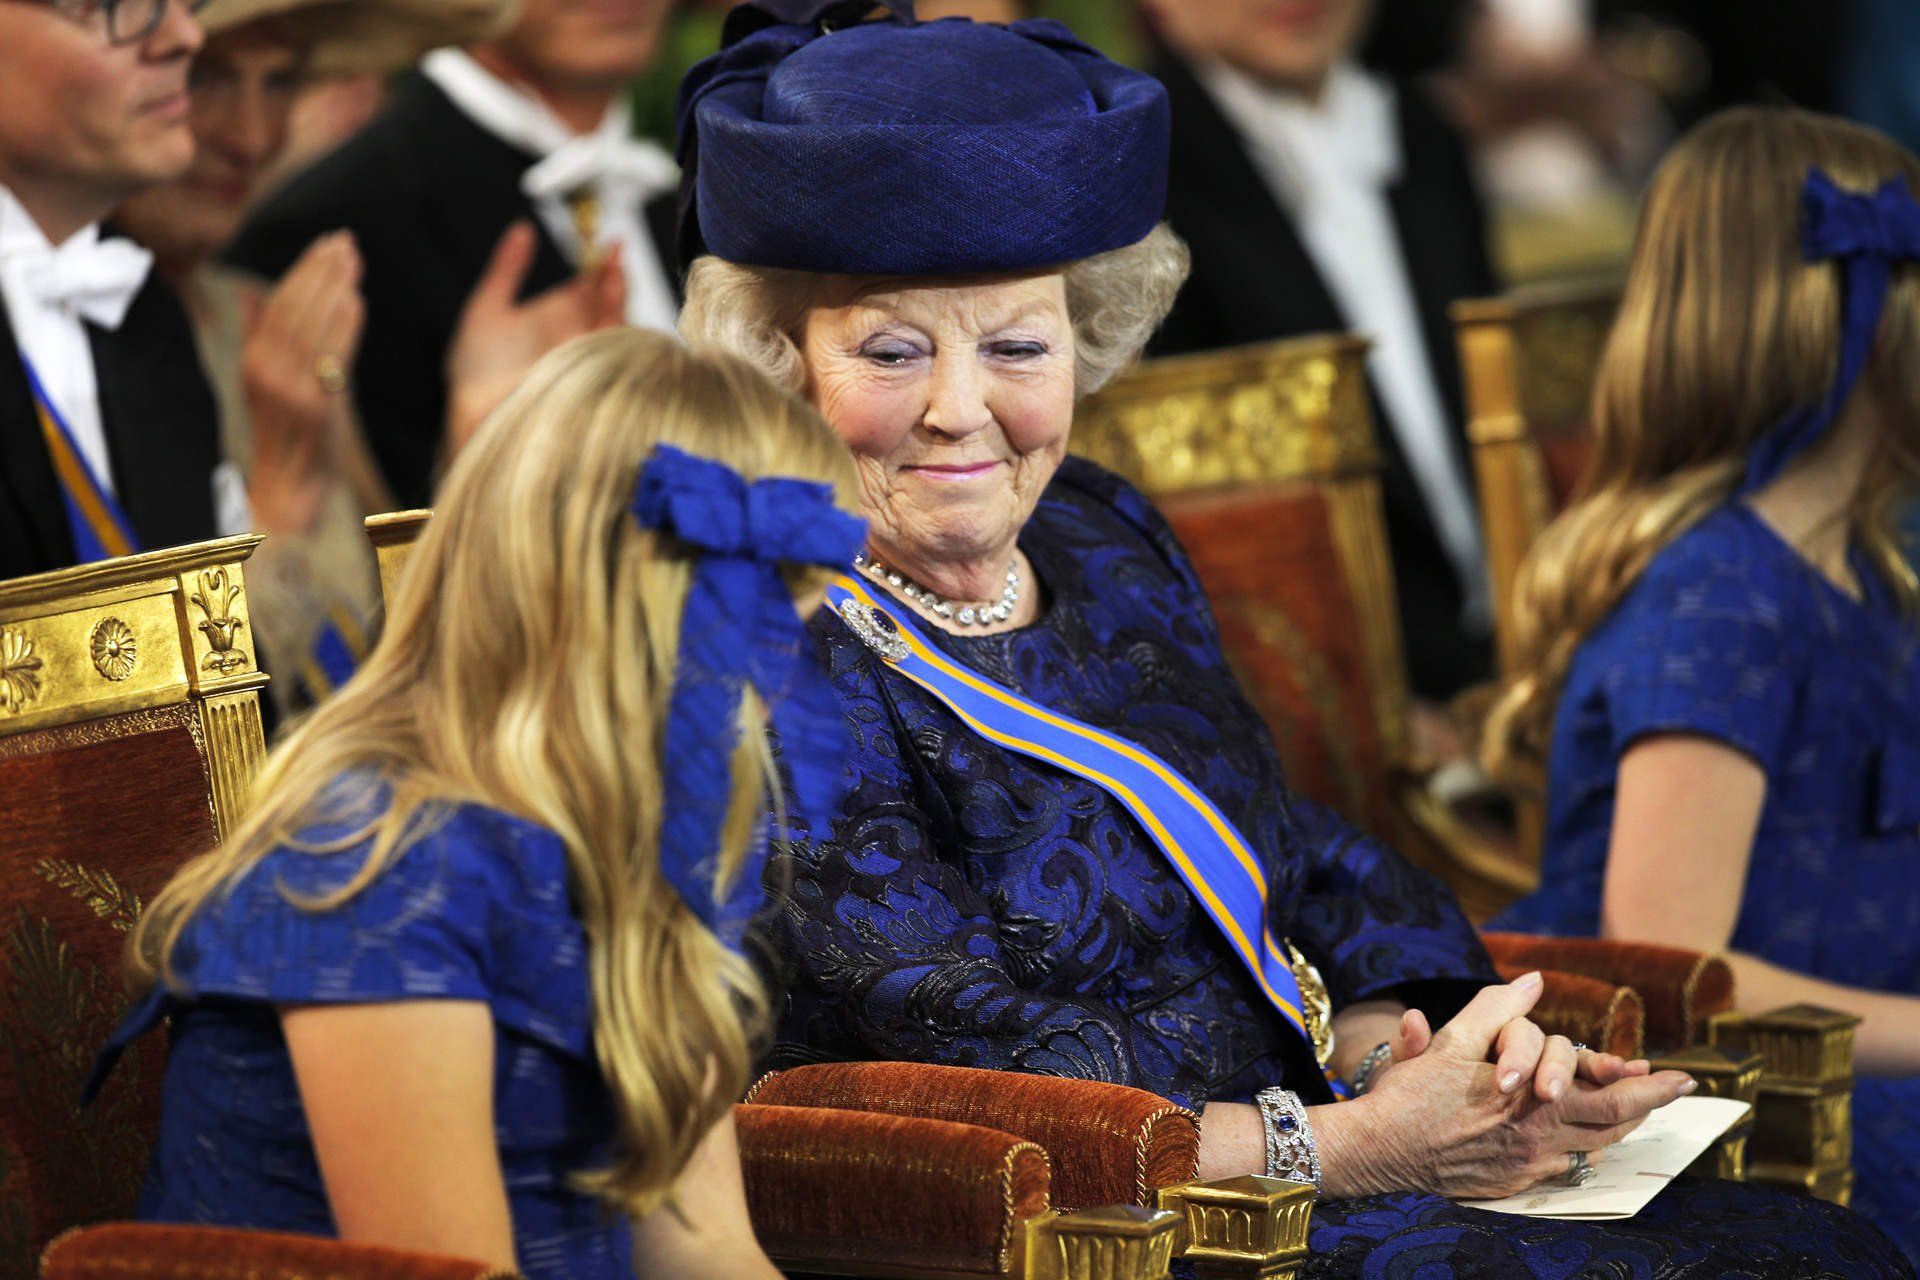 2013-Prinses-Beatrix-kijkt-naar-kroonprinses-Amalia-tijdens-de-inhuldiging-van-koning-Willem-Alexander-in-De-Nieuwe-Kerk